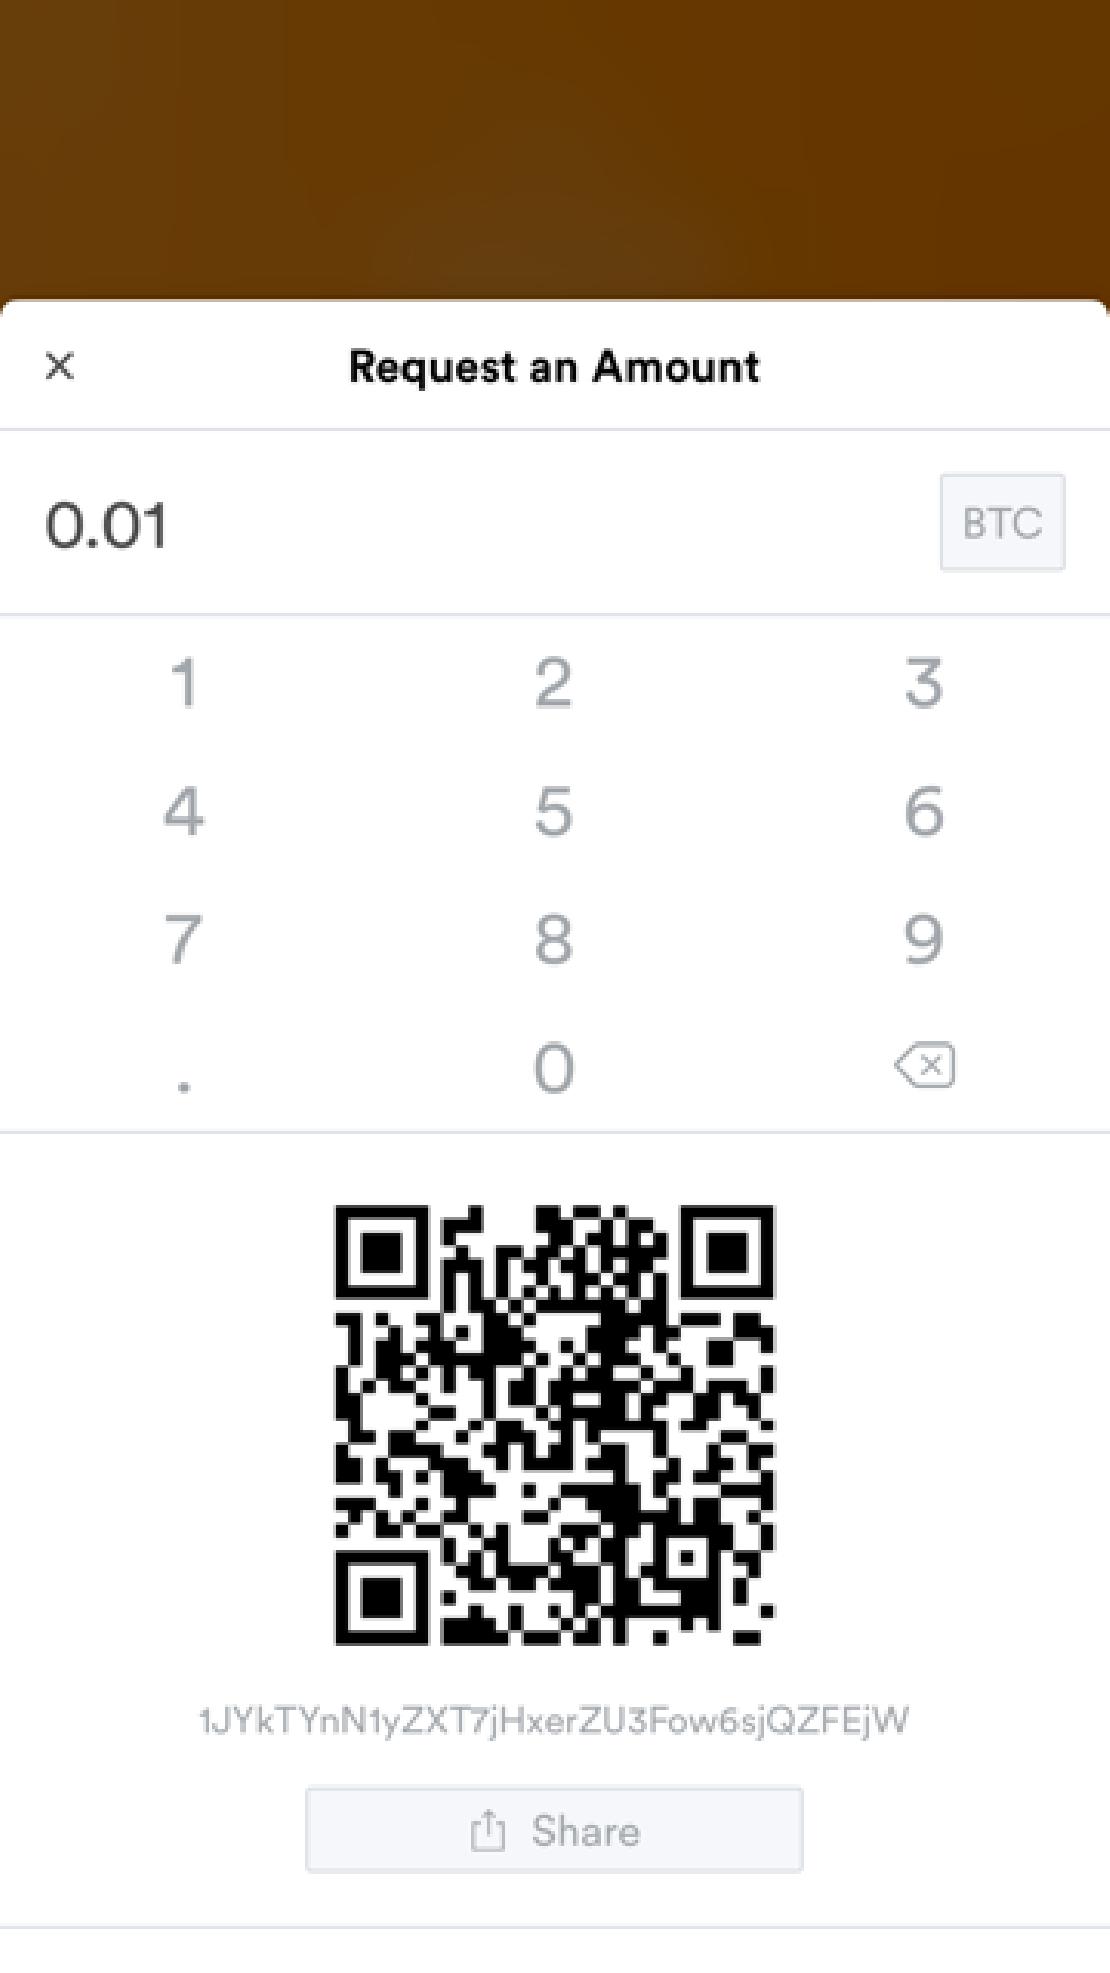 Bitcoin fogadásra alkalmas oldal a BRD tárcában, ahol meg van adva a fogadni kívánt összeg is. 